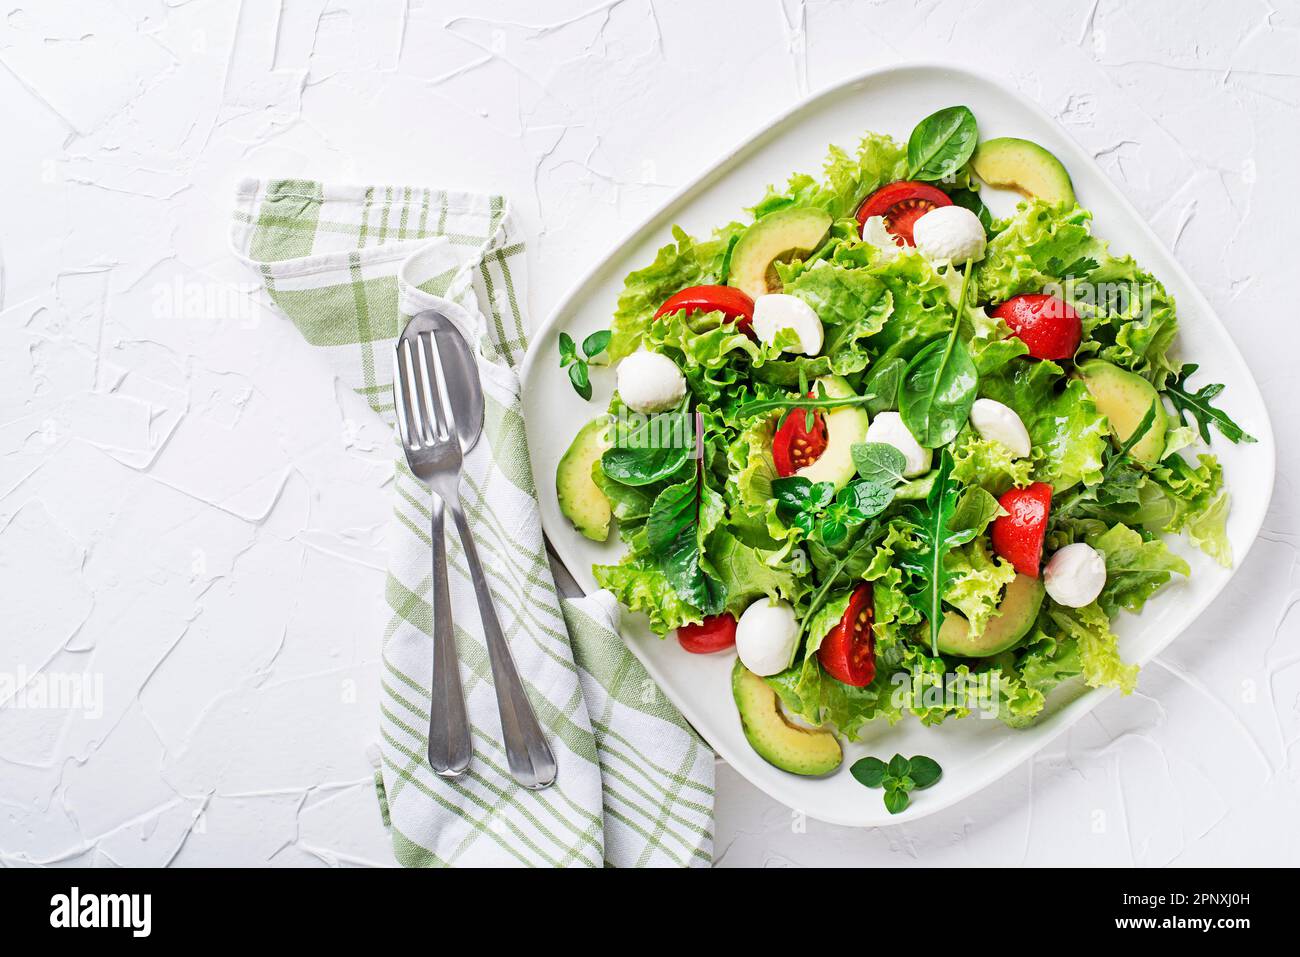 Fresh green salad with avocado, mozzarella cheese and tomato on white table background Stock Photo